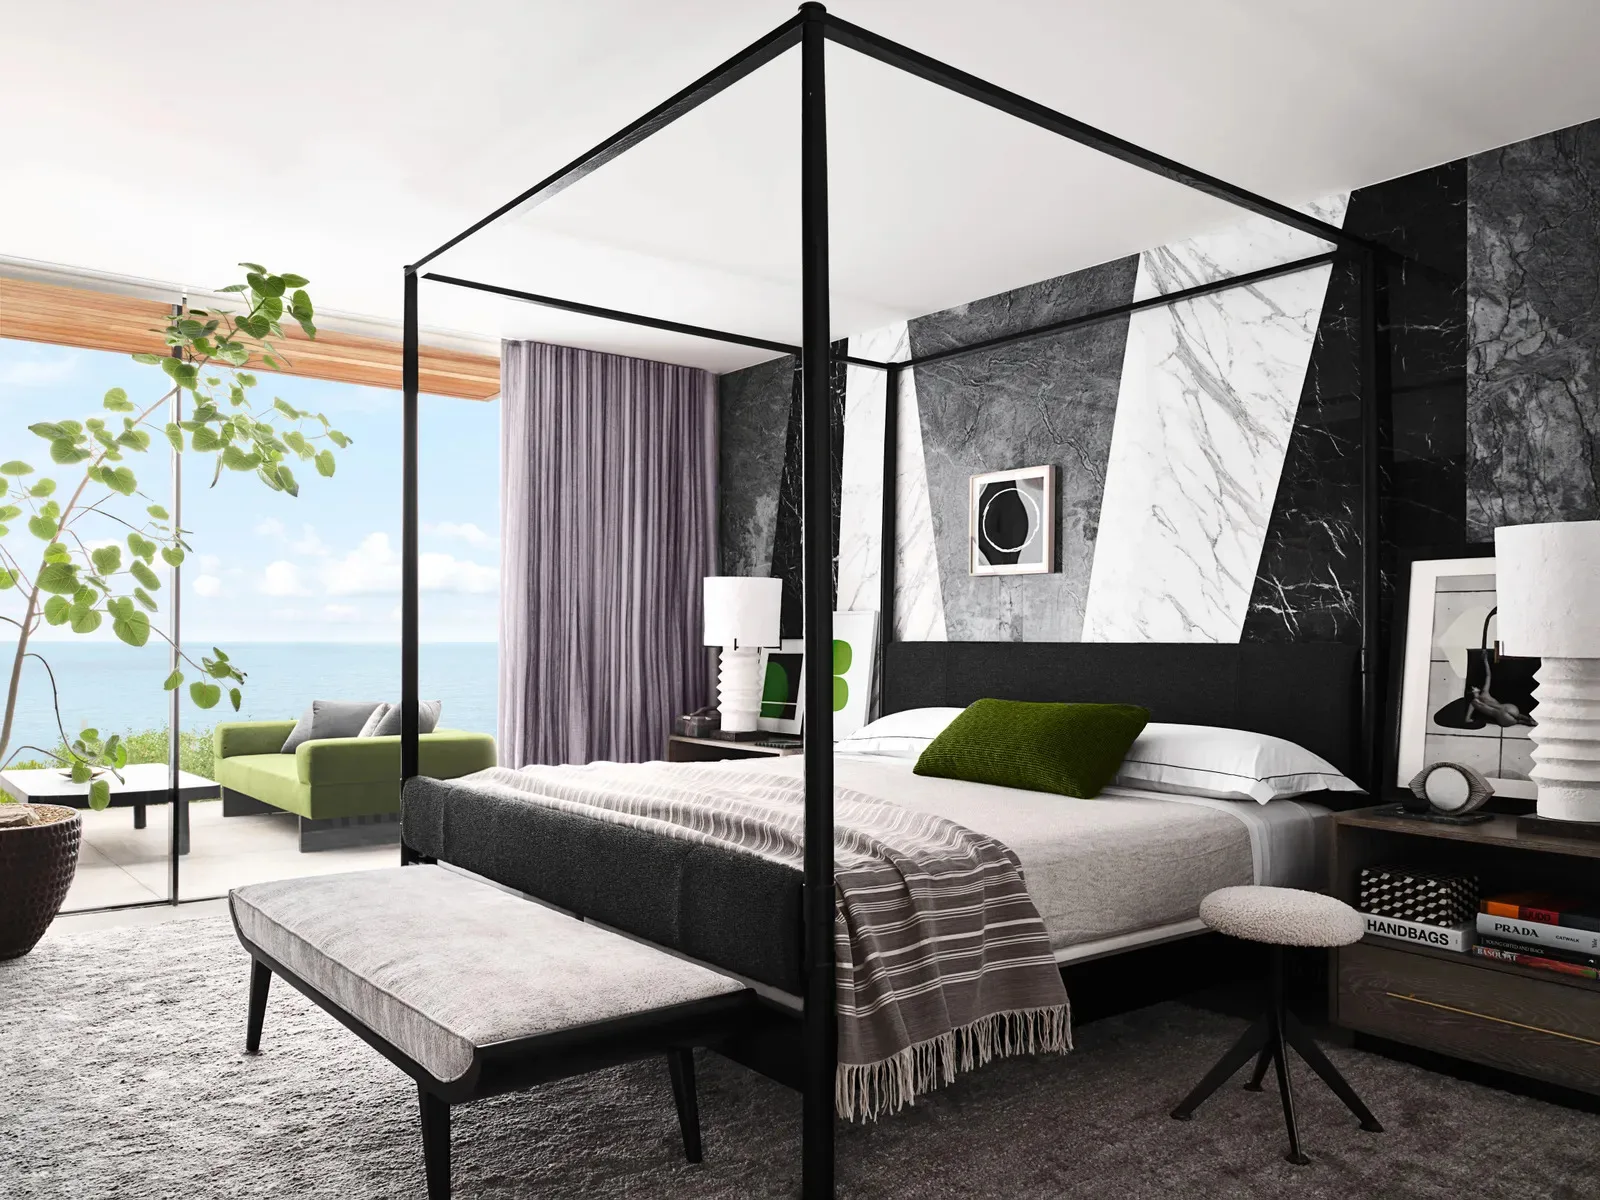 Ellen Pompeo's bedroom in neutral and green tones